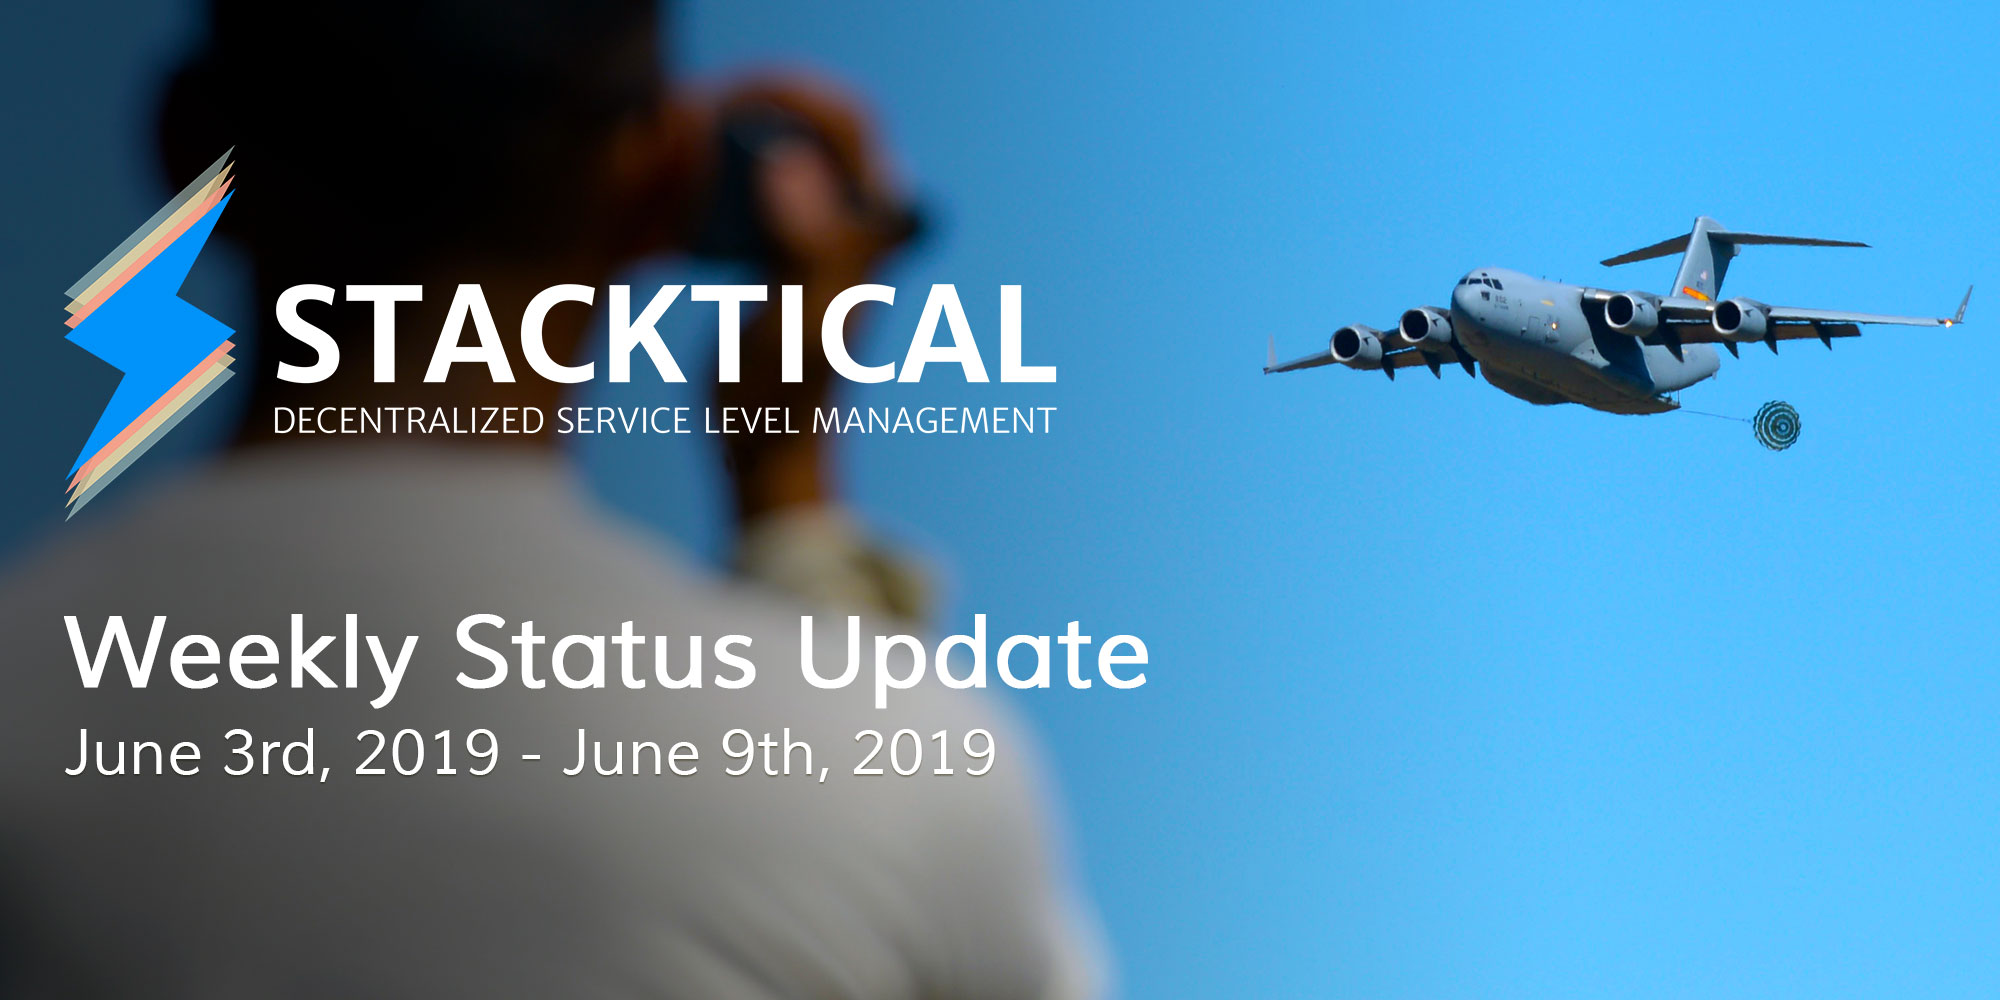 Weekly Status Update: June 3rd, 2019 - June 9th, 2019